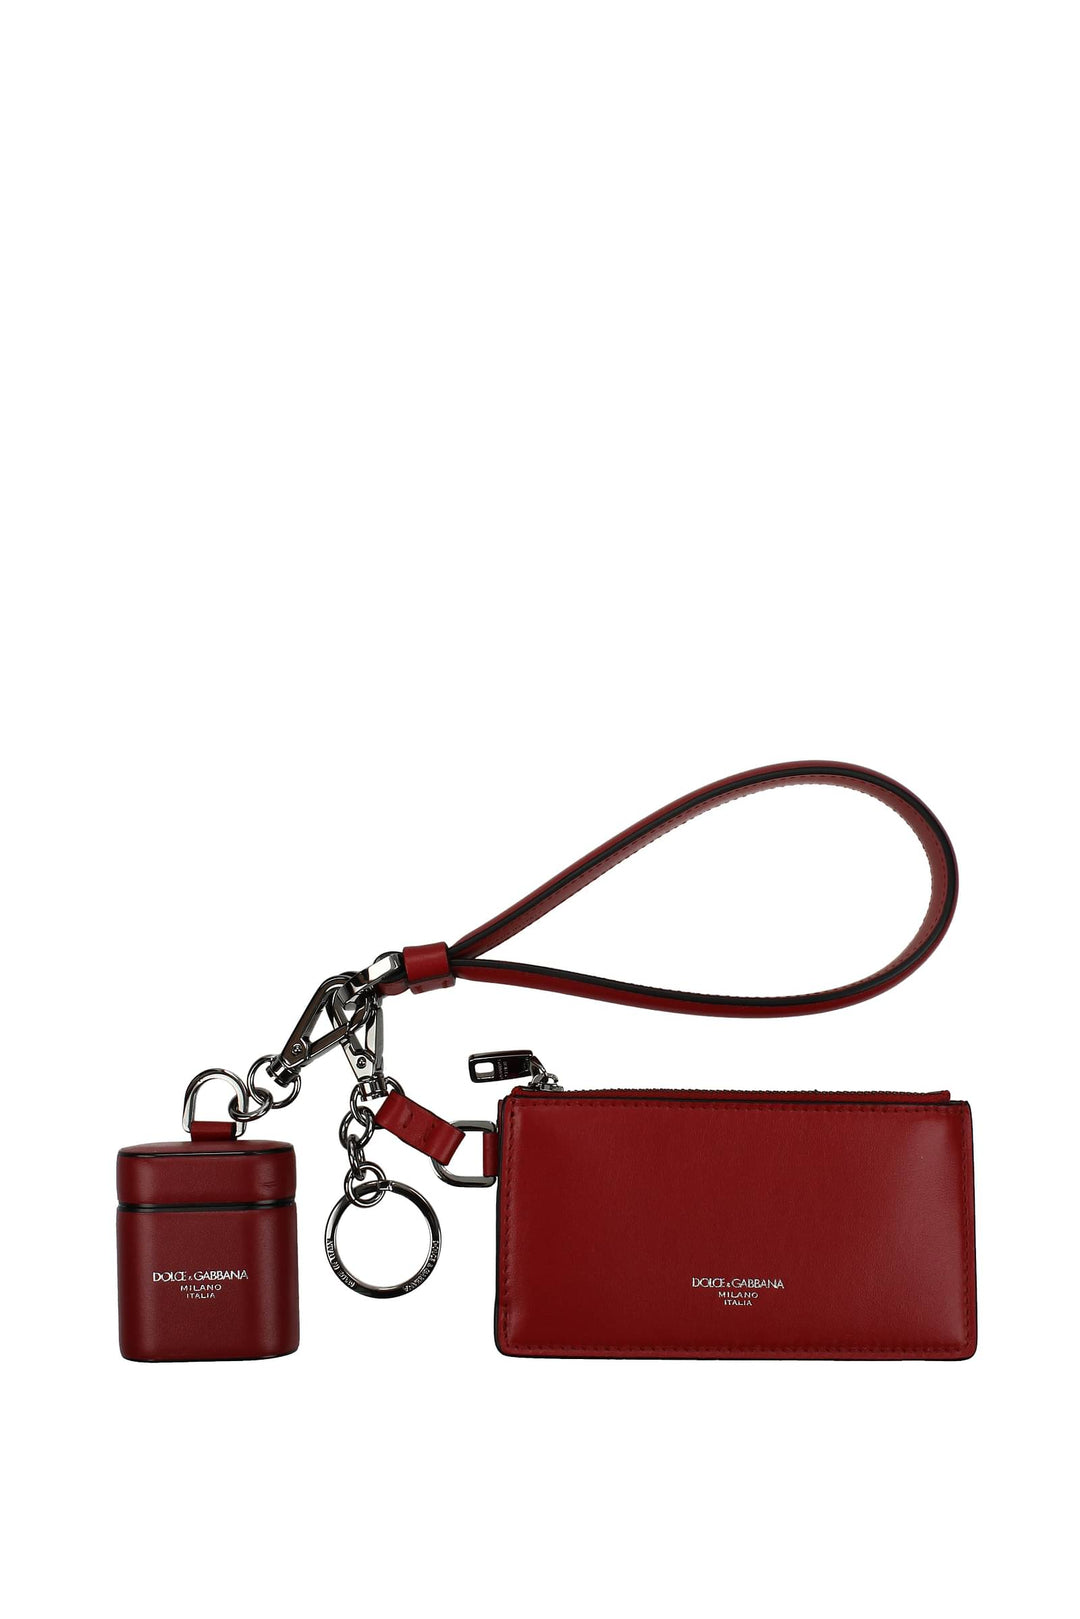 Portamonete Airpods Case Second Generation Pelle Rosso Rosso Scuro - Dolce&Gabbana - Donna